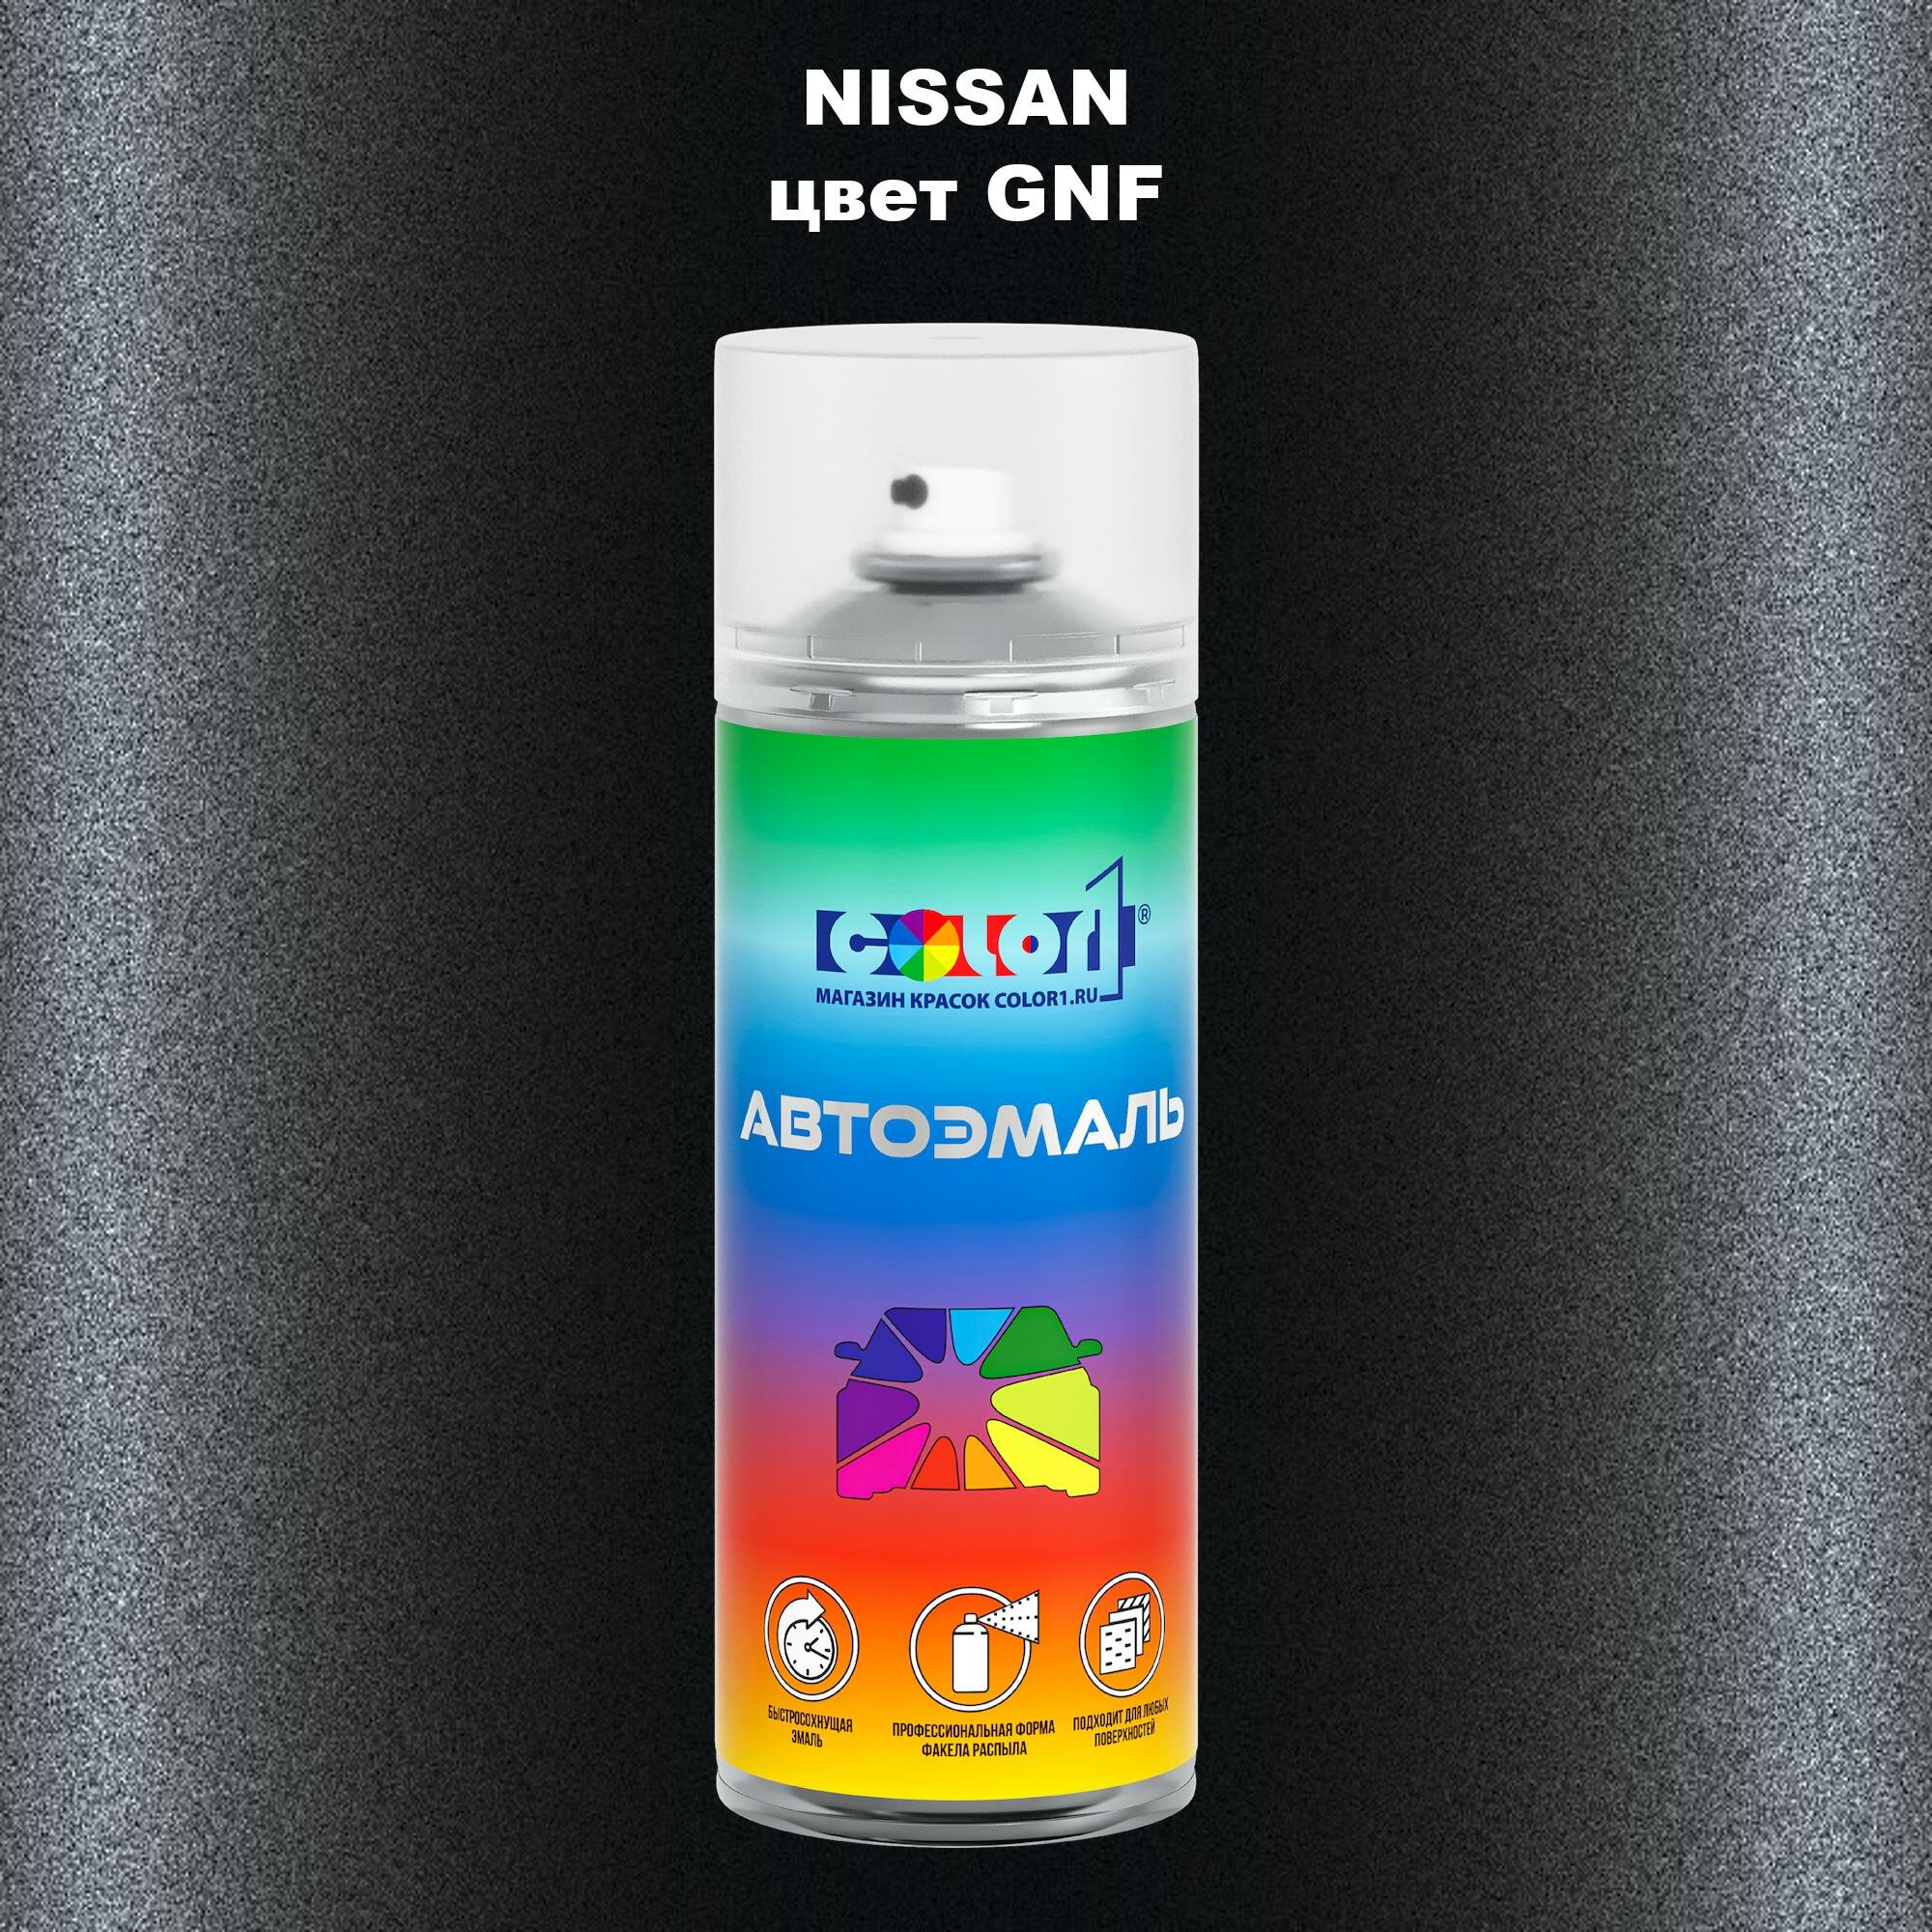 Аэрозольная краска 520мл, для NISSAN, цвет GNF - BLACK (622 - Феникс)